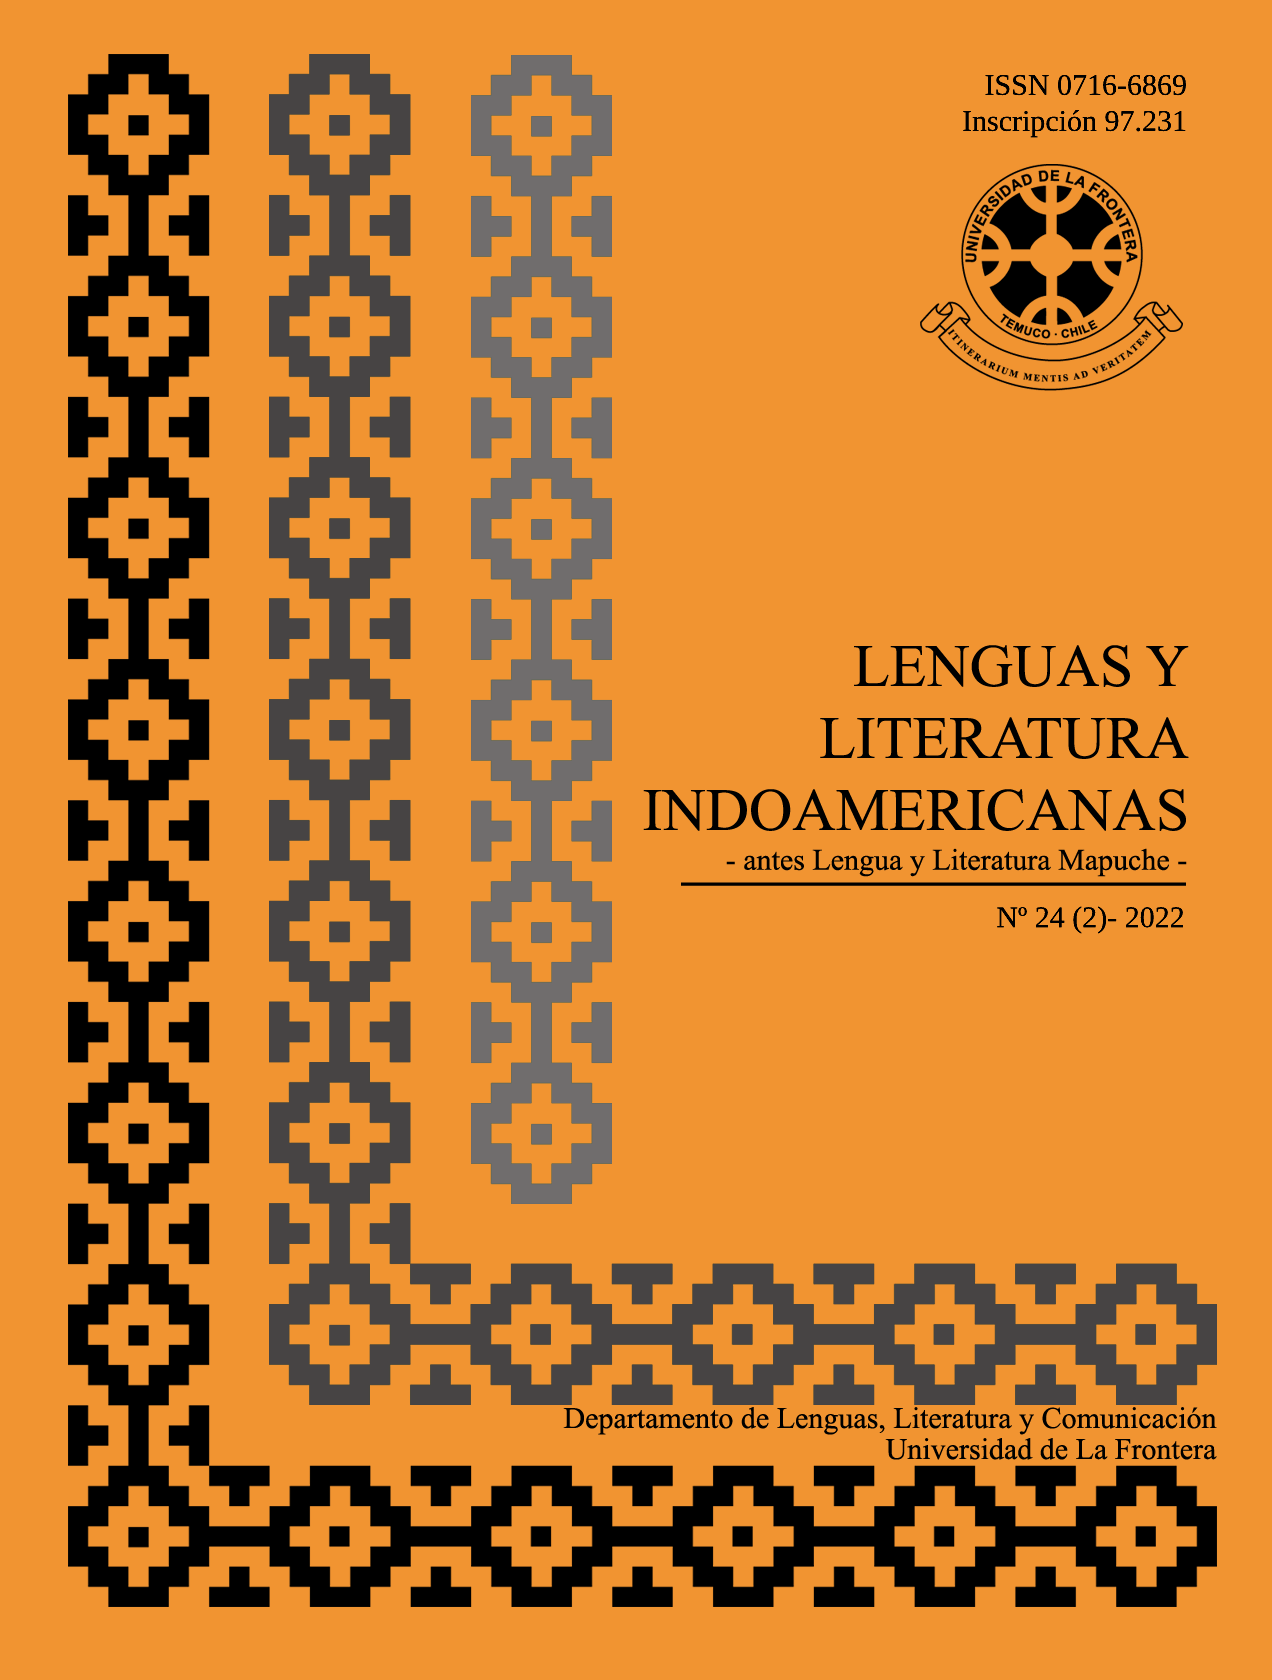 					Ver Vol. 24 Núm. 2 (2022): Revista de Lenguas y Literatura Indoamericanas (RLLI)
				